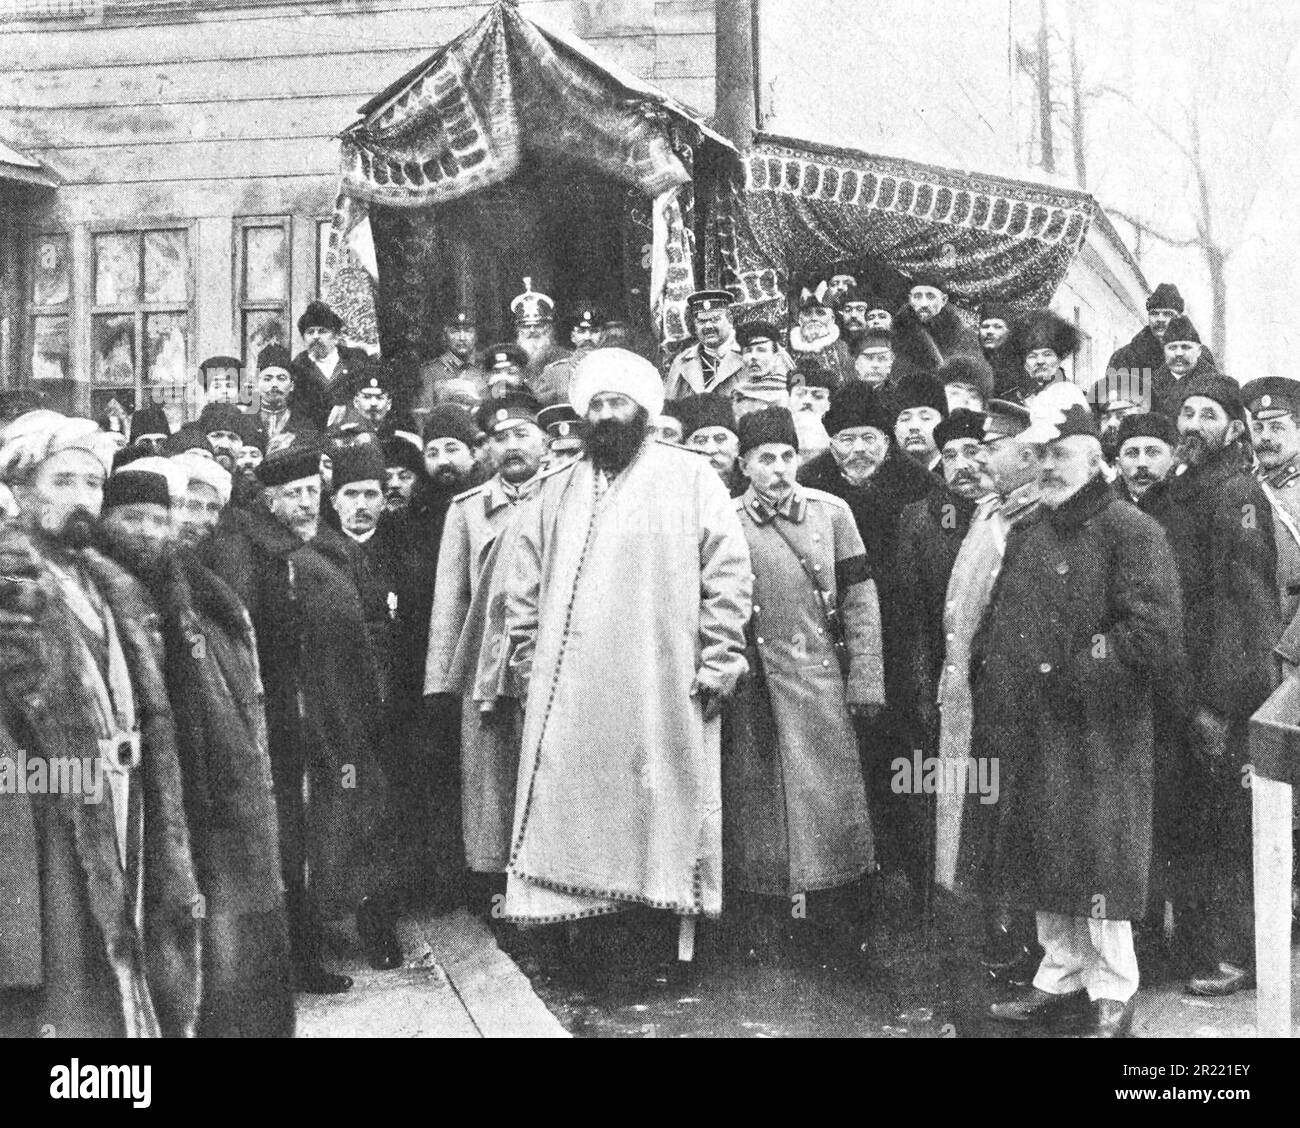 La posa della moschea di St Pietroburgo alla presenza dell'Emiro di Bukhara. Foto dal 1910. Foto Stock